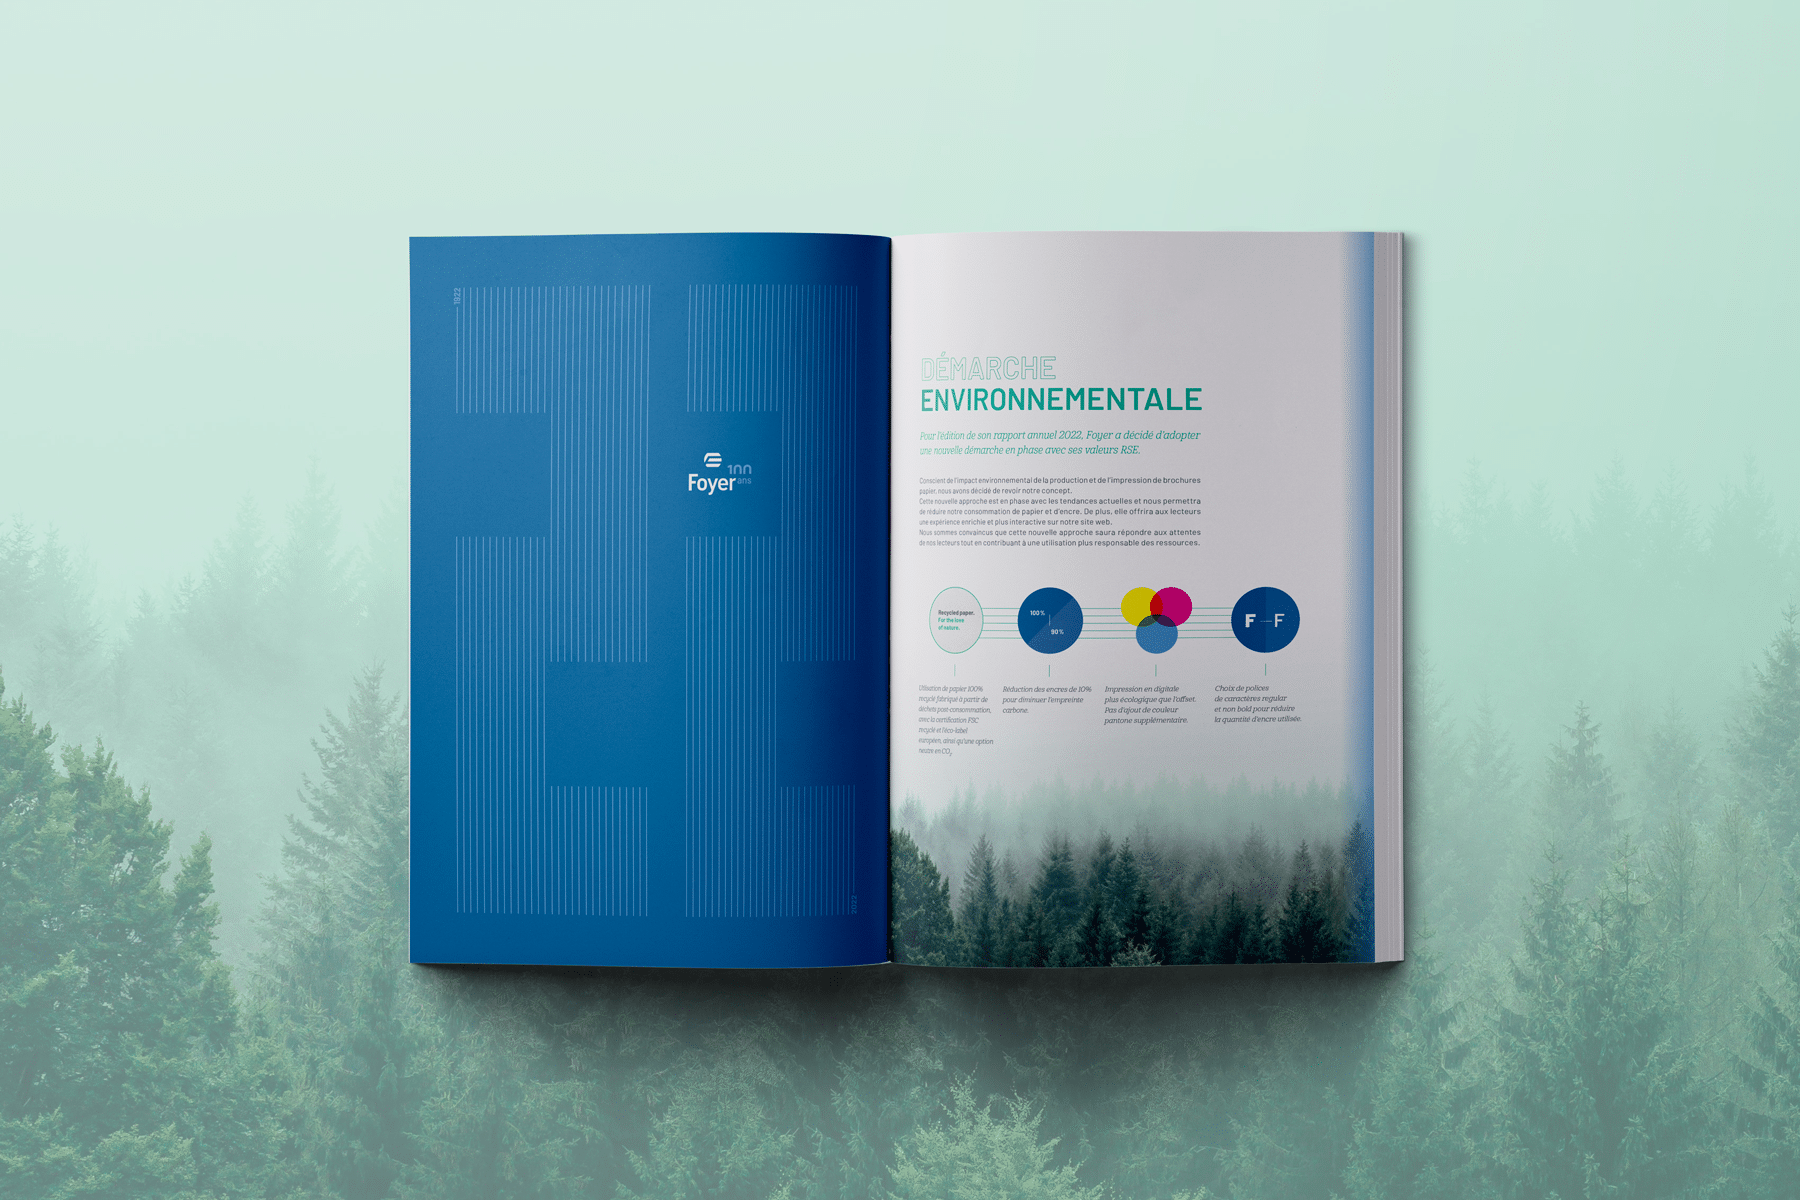 Une brochure ouverte montrant une page bleue avec le logo "Foyer" sur la gauche et une page blanche sur la droite intitulée "Démarche Environnementale". La page droite contient du texte explicatif et des graphiques en couleurs, soulignant les initiatives écologiques et les engagements environnementaux de l'entreprise. L'arrière-plan de l'image montre une forêt verdoyante sous un ciel clair, renforçant le thème de l'écologie et de la durabilité.